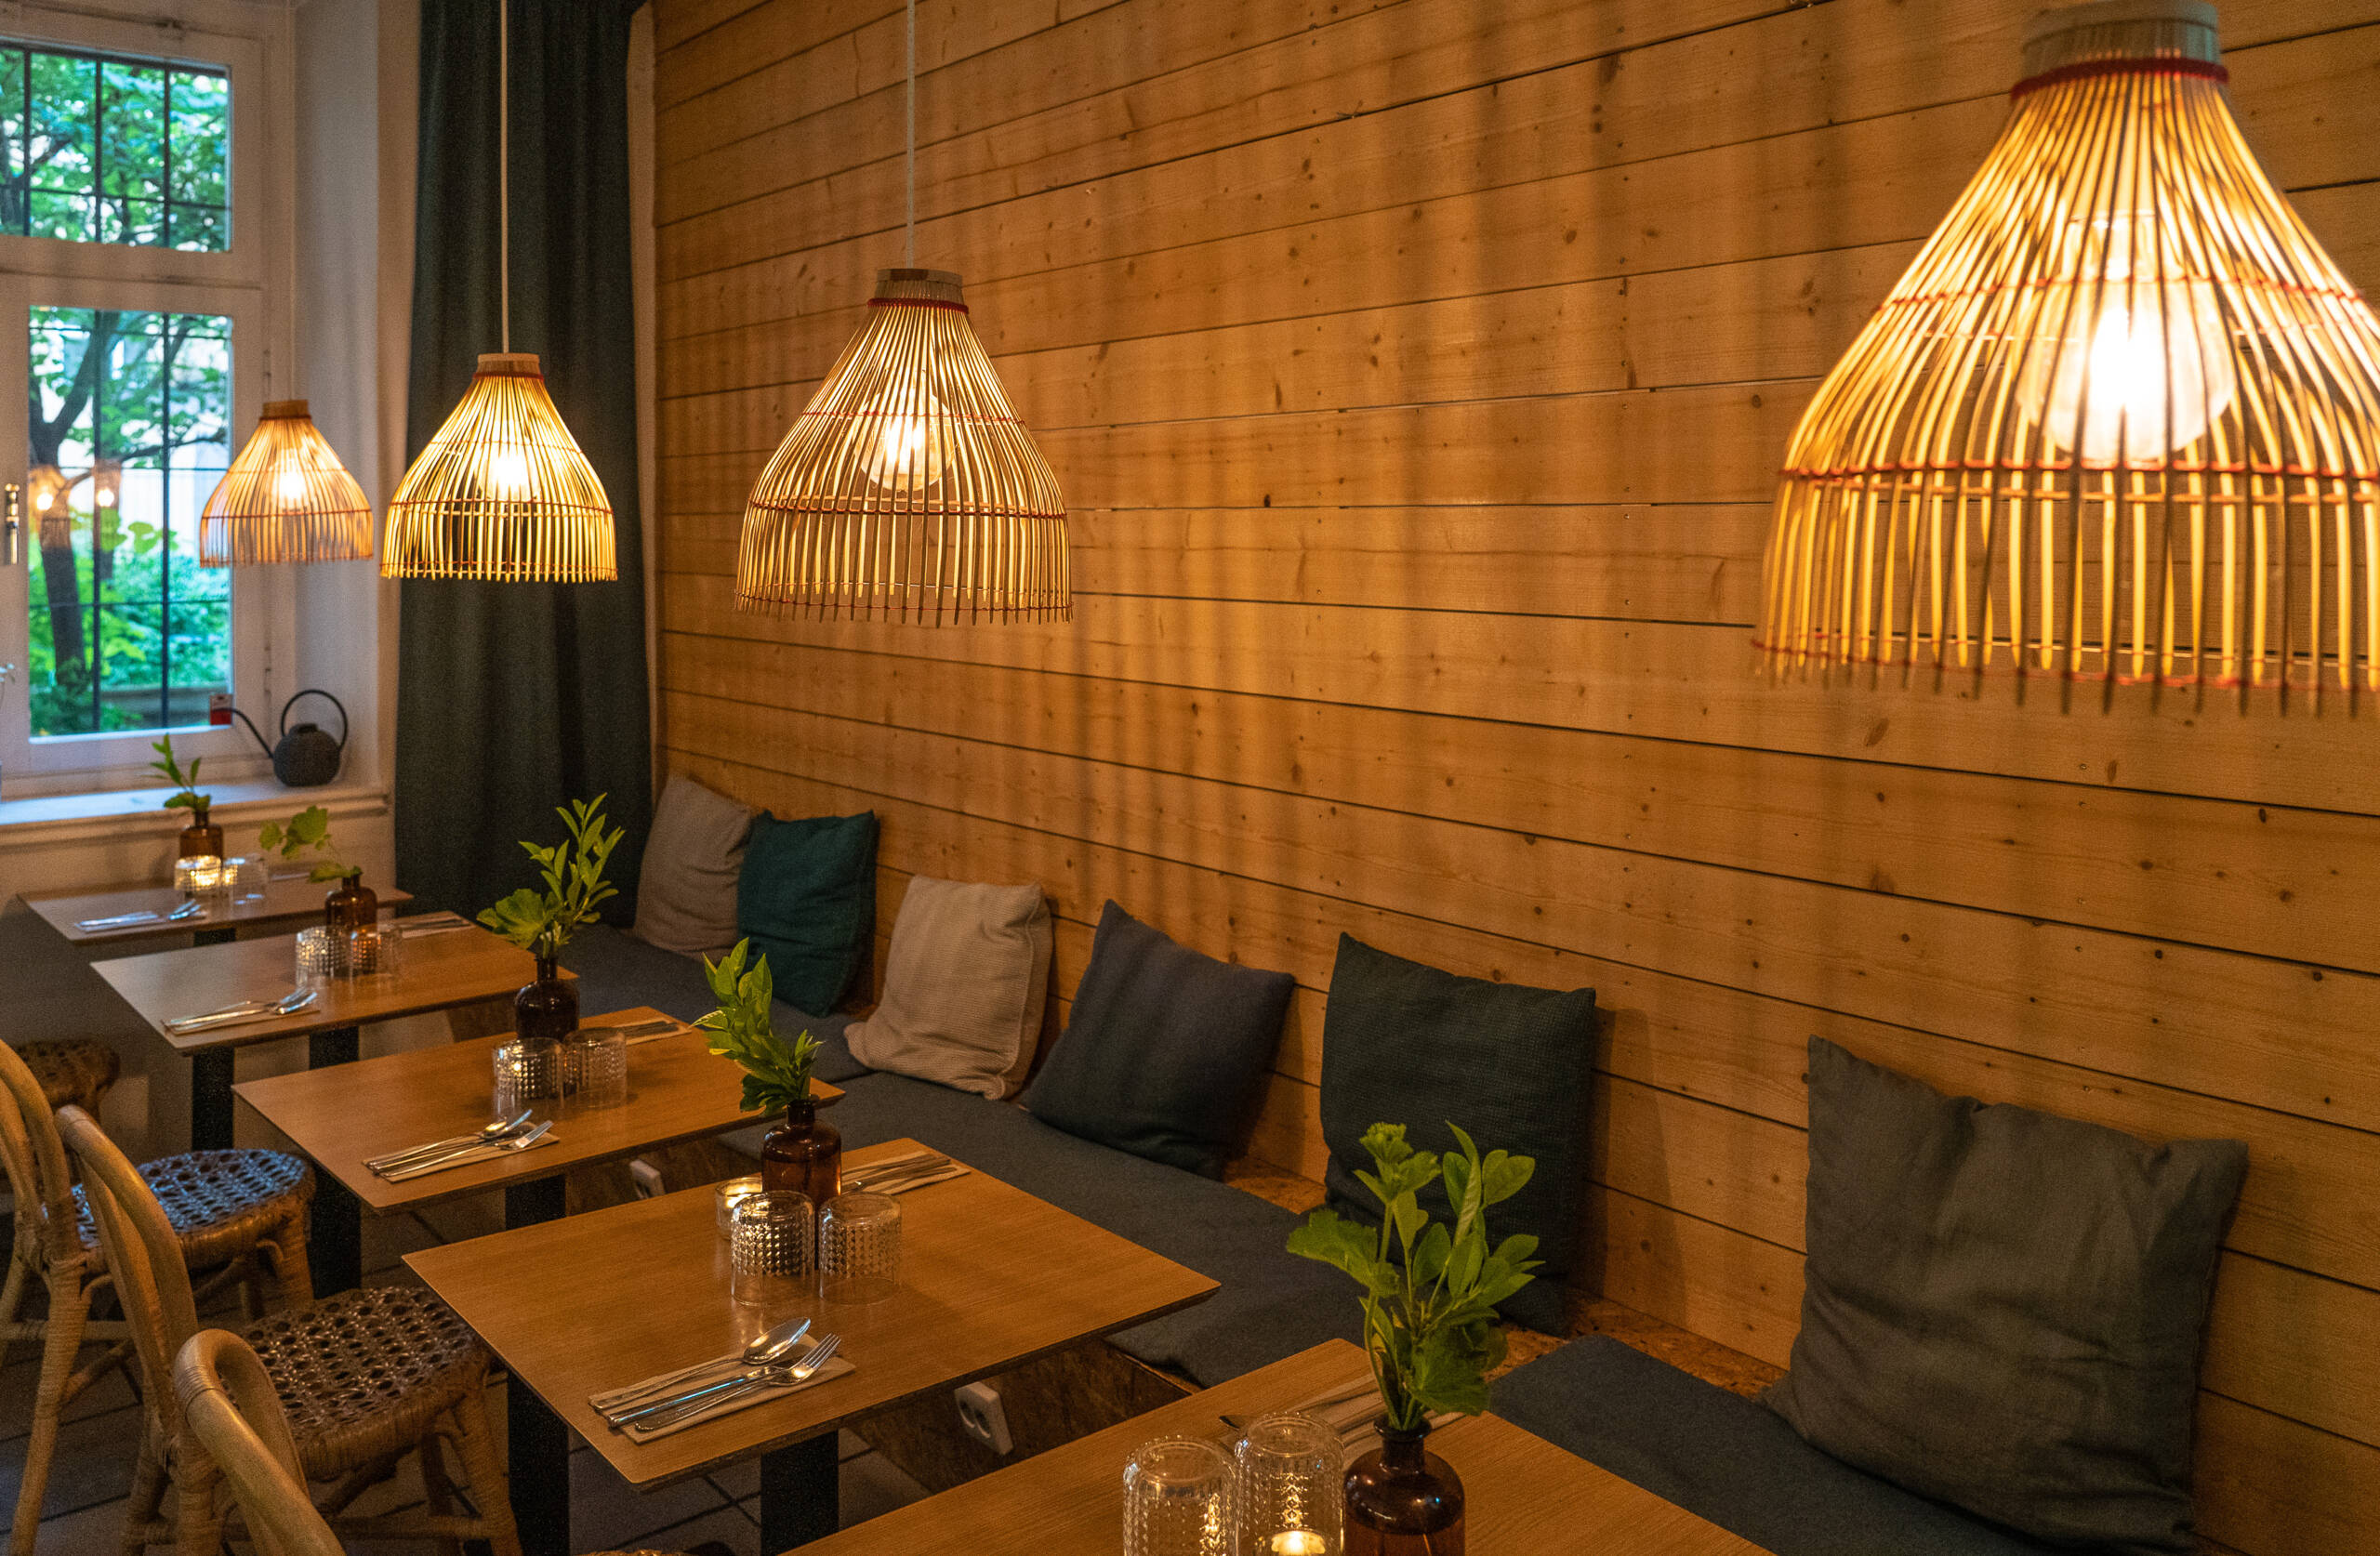 Ein Restaurant Geheimtipp mit Bali-Vibes und Urlaubsfeelings mit viel Holz und Bambus ist das Warung in Hornstull..